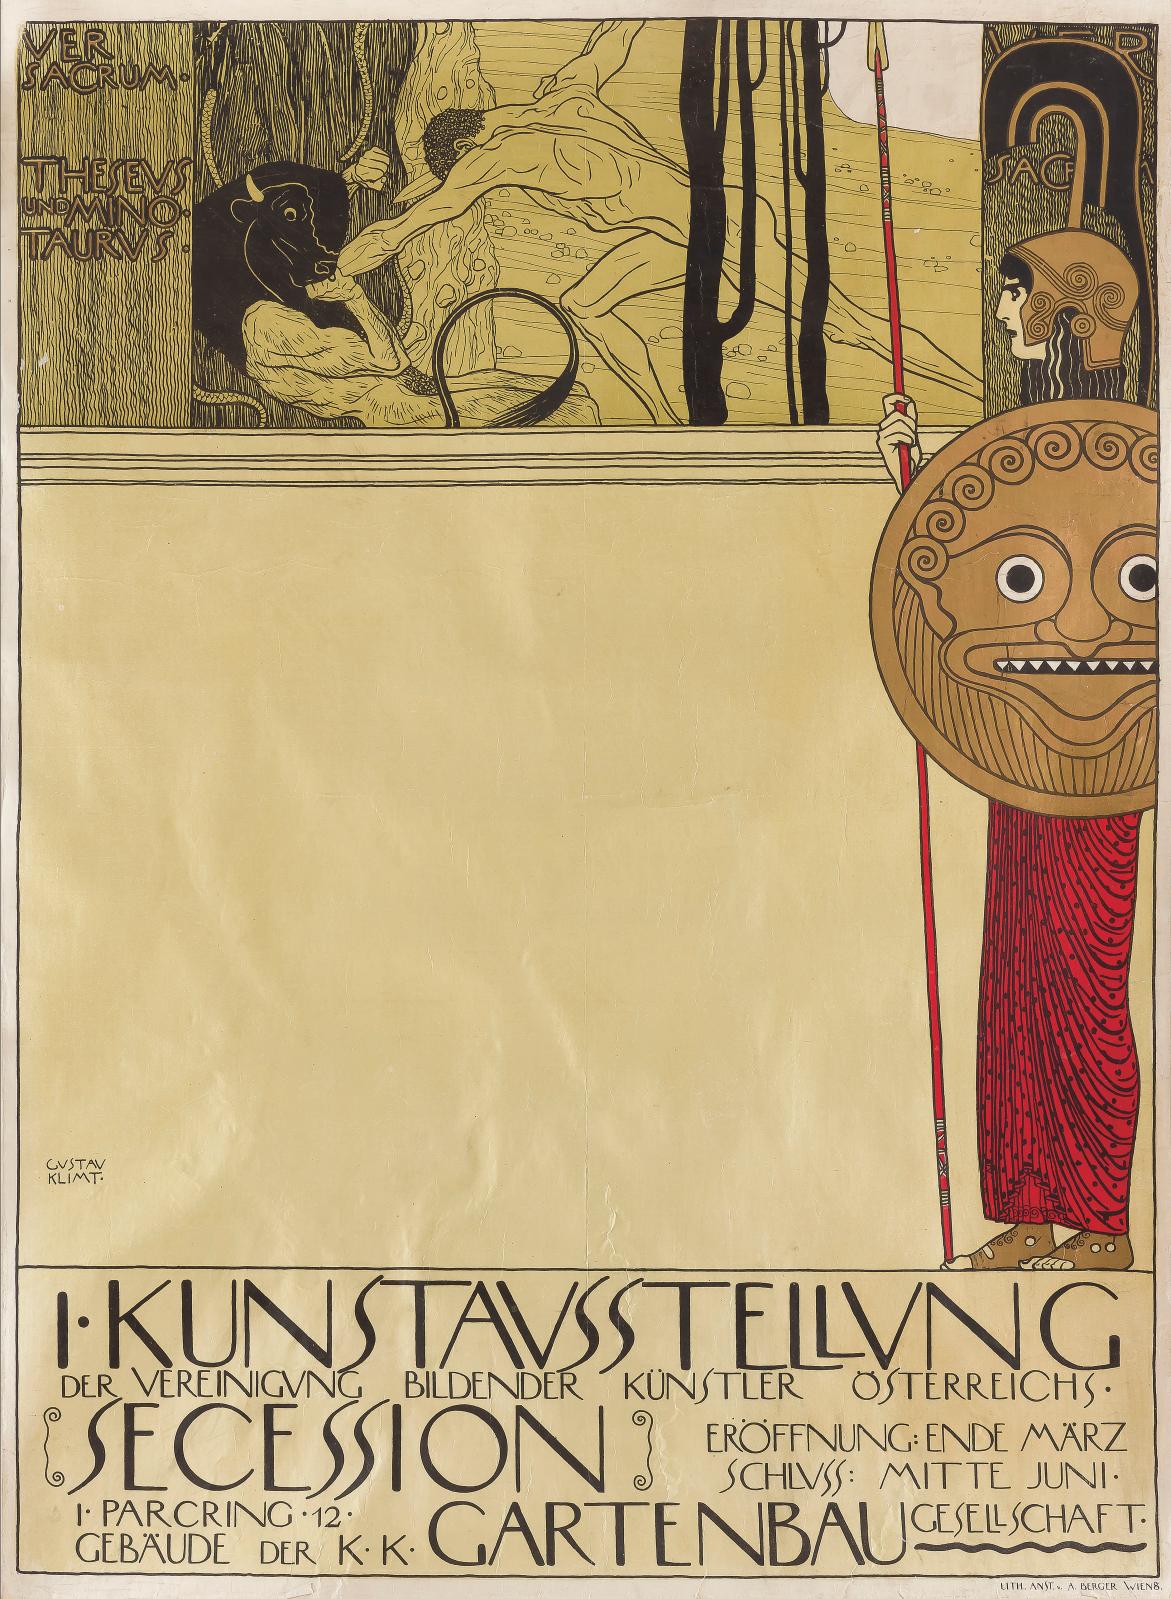 53 760 € venaient saluer cette rarissime production (97 x 71 cm) de Gustav Klimt (1862-1918) pour la première exposition de la Sécession v